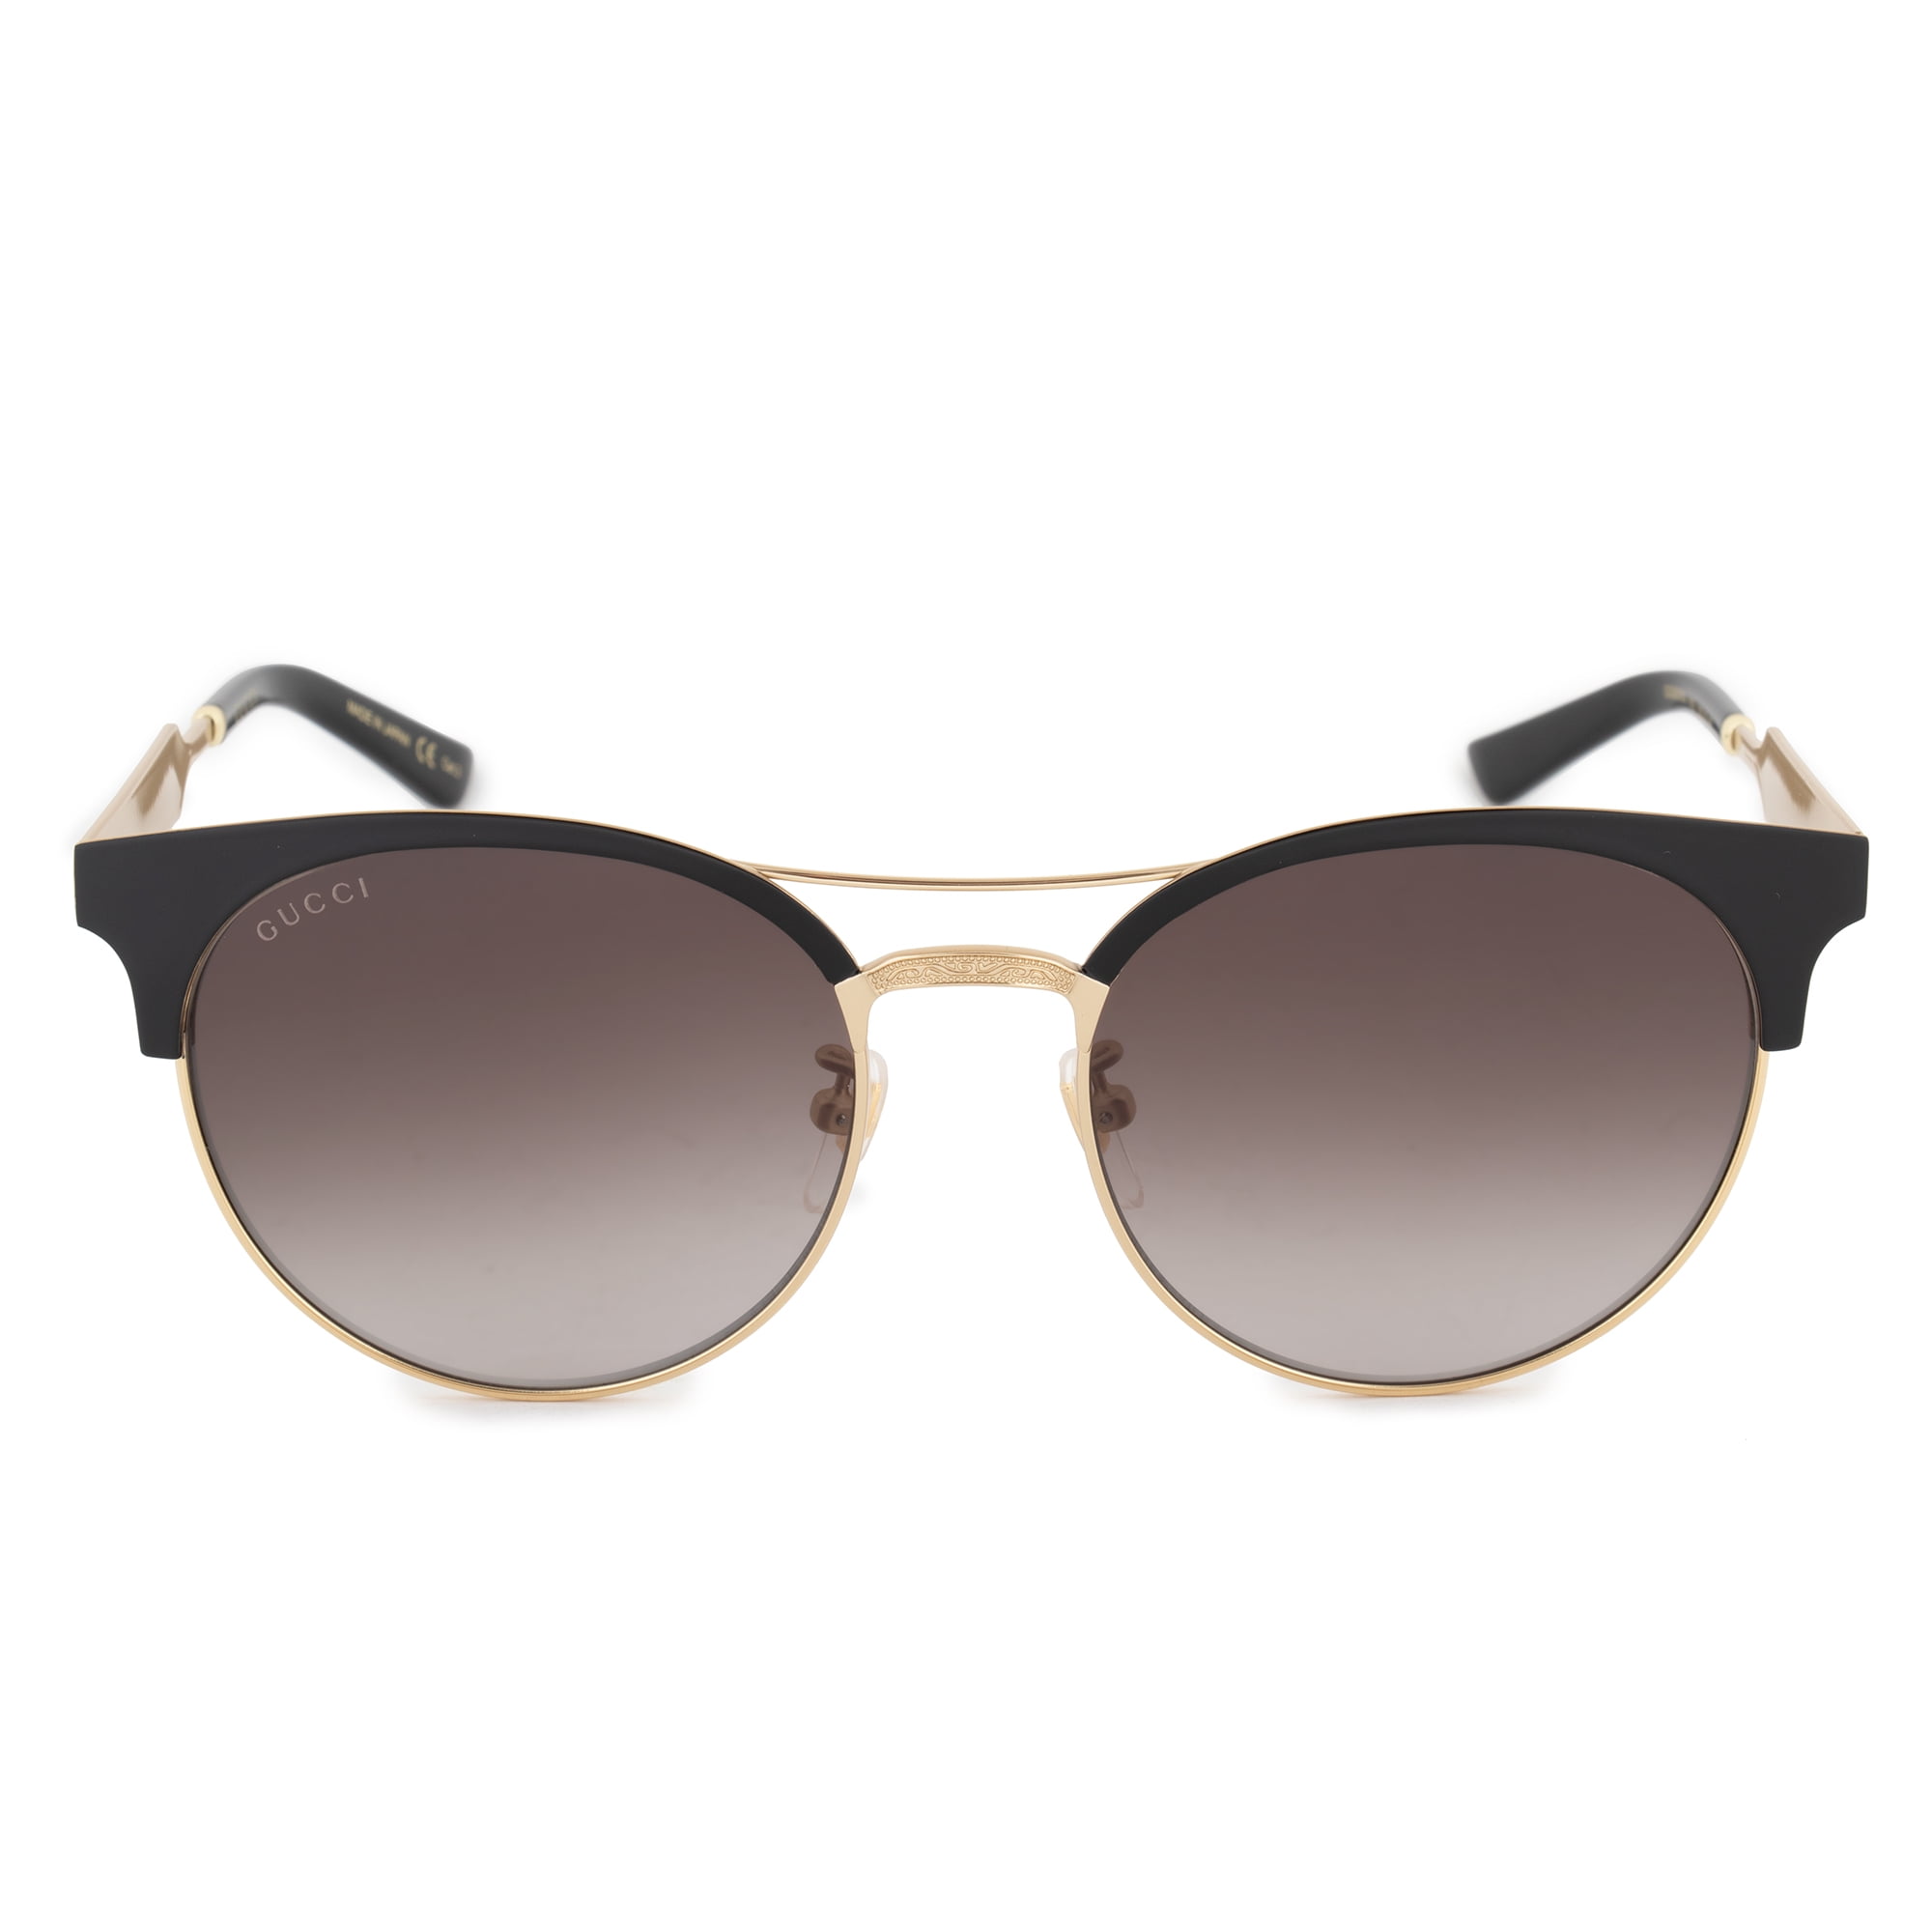 Gucci Round Sunglasses GG0075S 002 56 